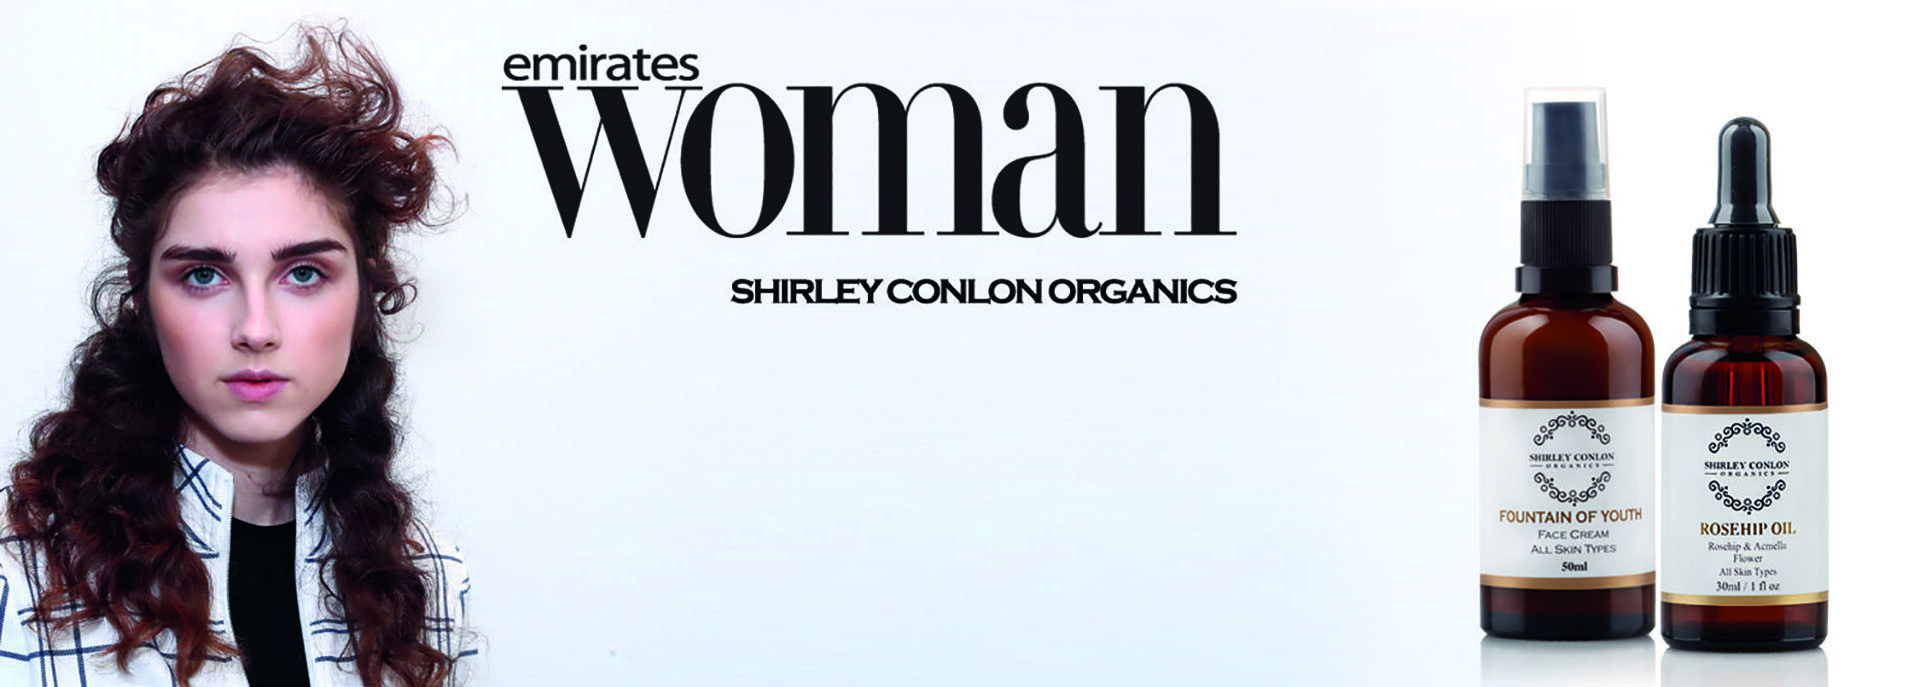 Shirley Conlon Organics | Organic Skincare Dubai | Emirates Woman Banner